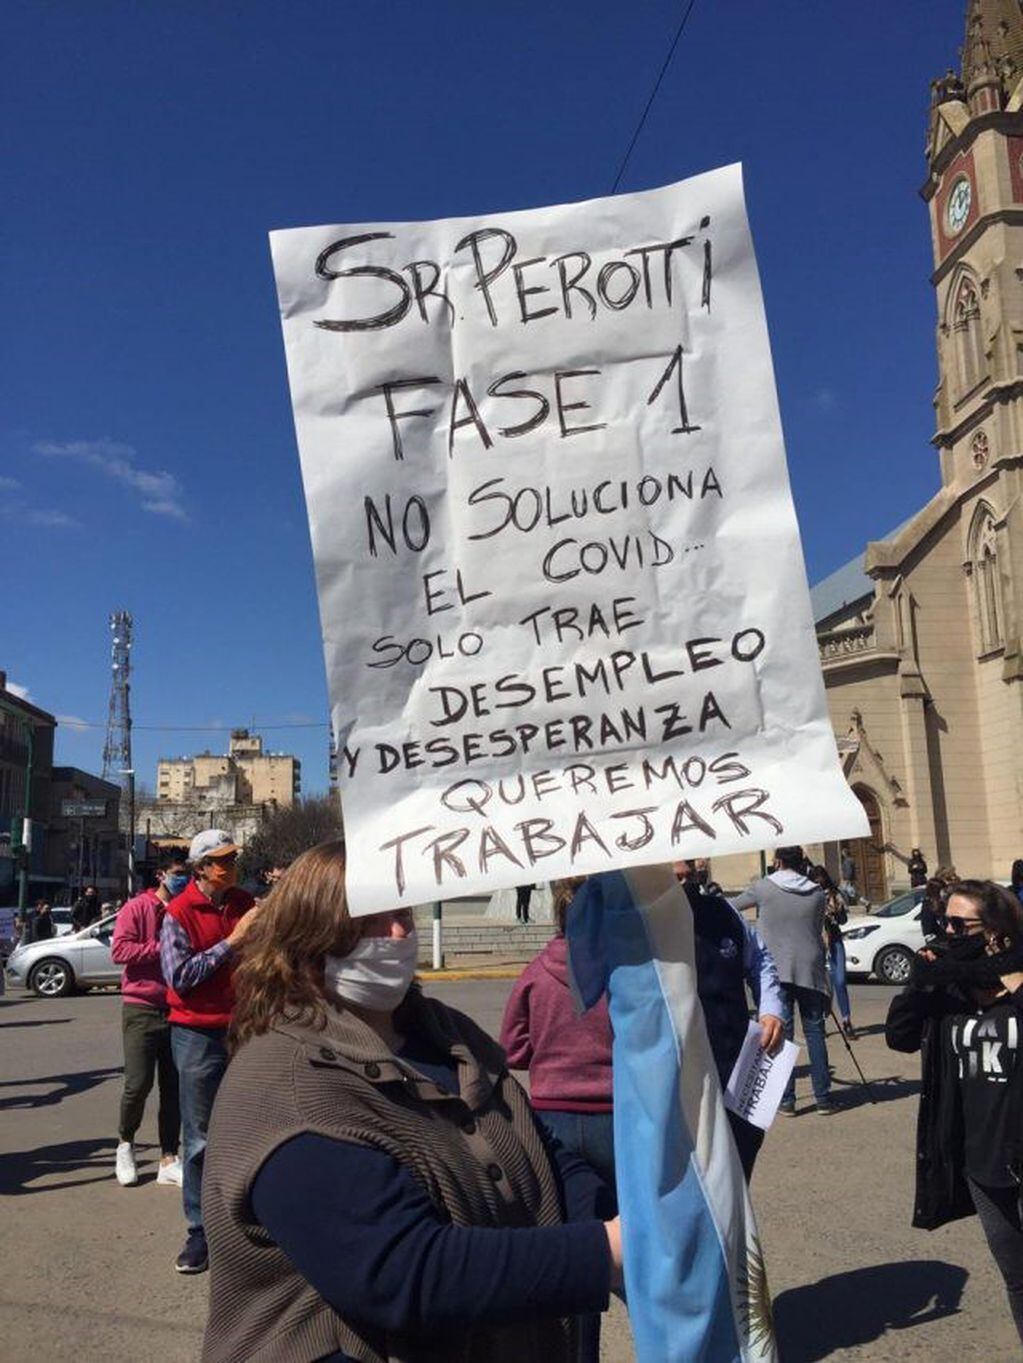 Multitudinaria marcha en Venado Tuerto en contra de las restricciones de Perotti (Venado 24)